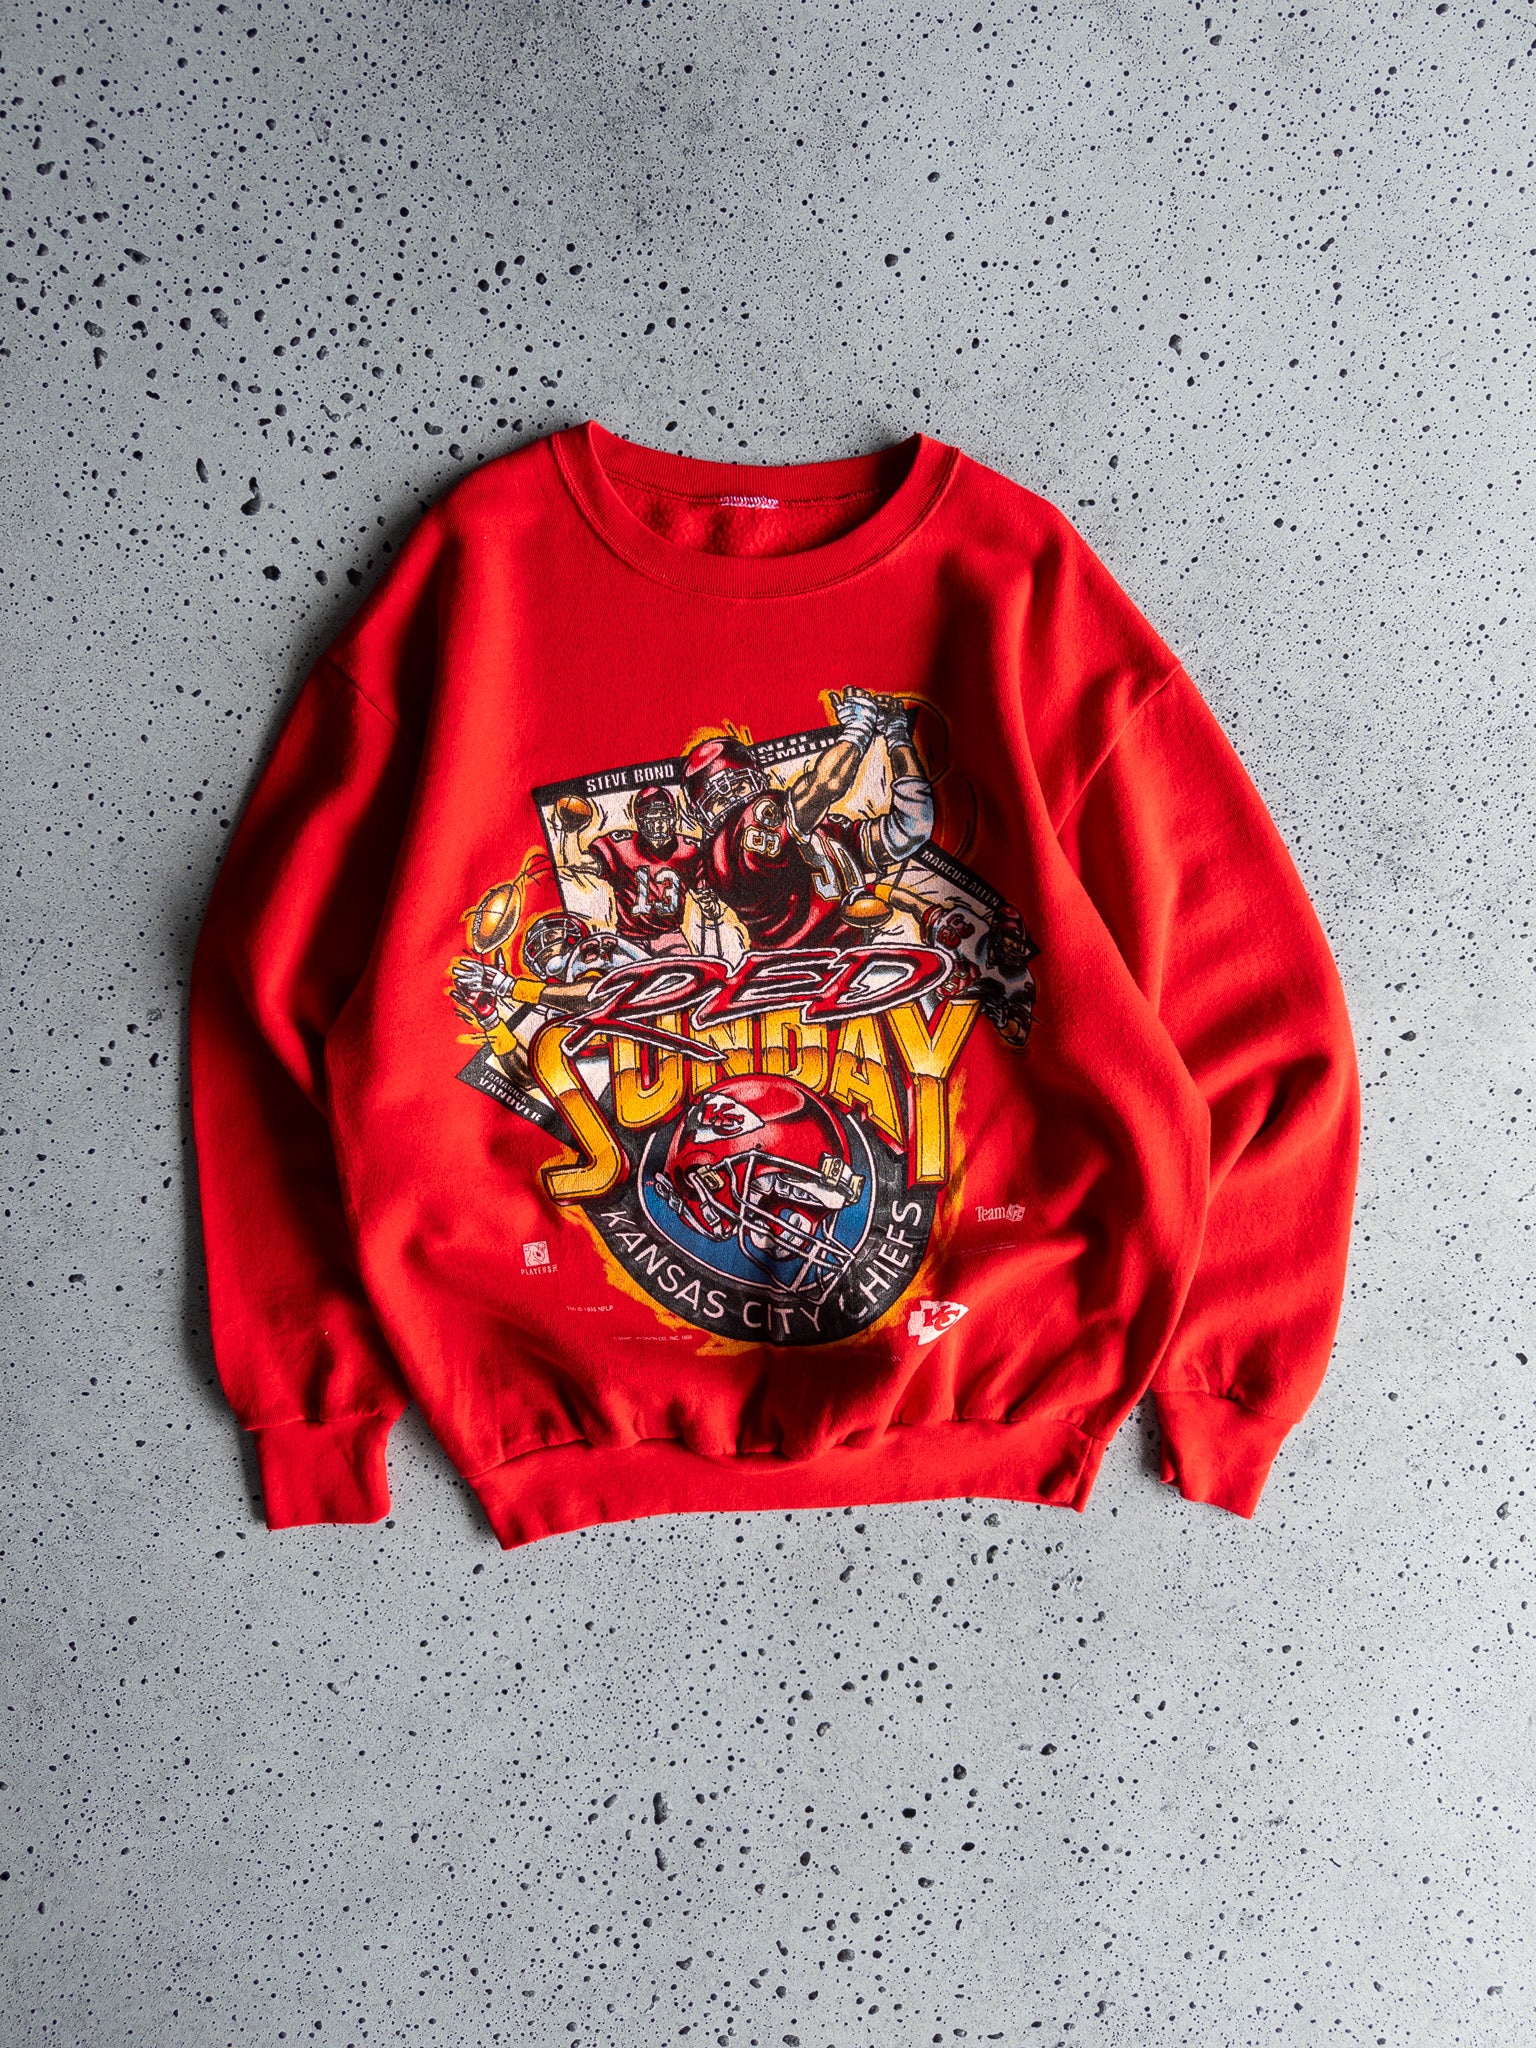 Vintage Kansas City Chiefs 1995 Sweatshirt (L)